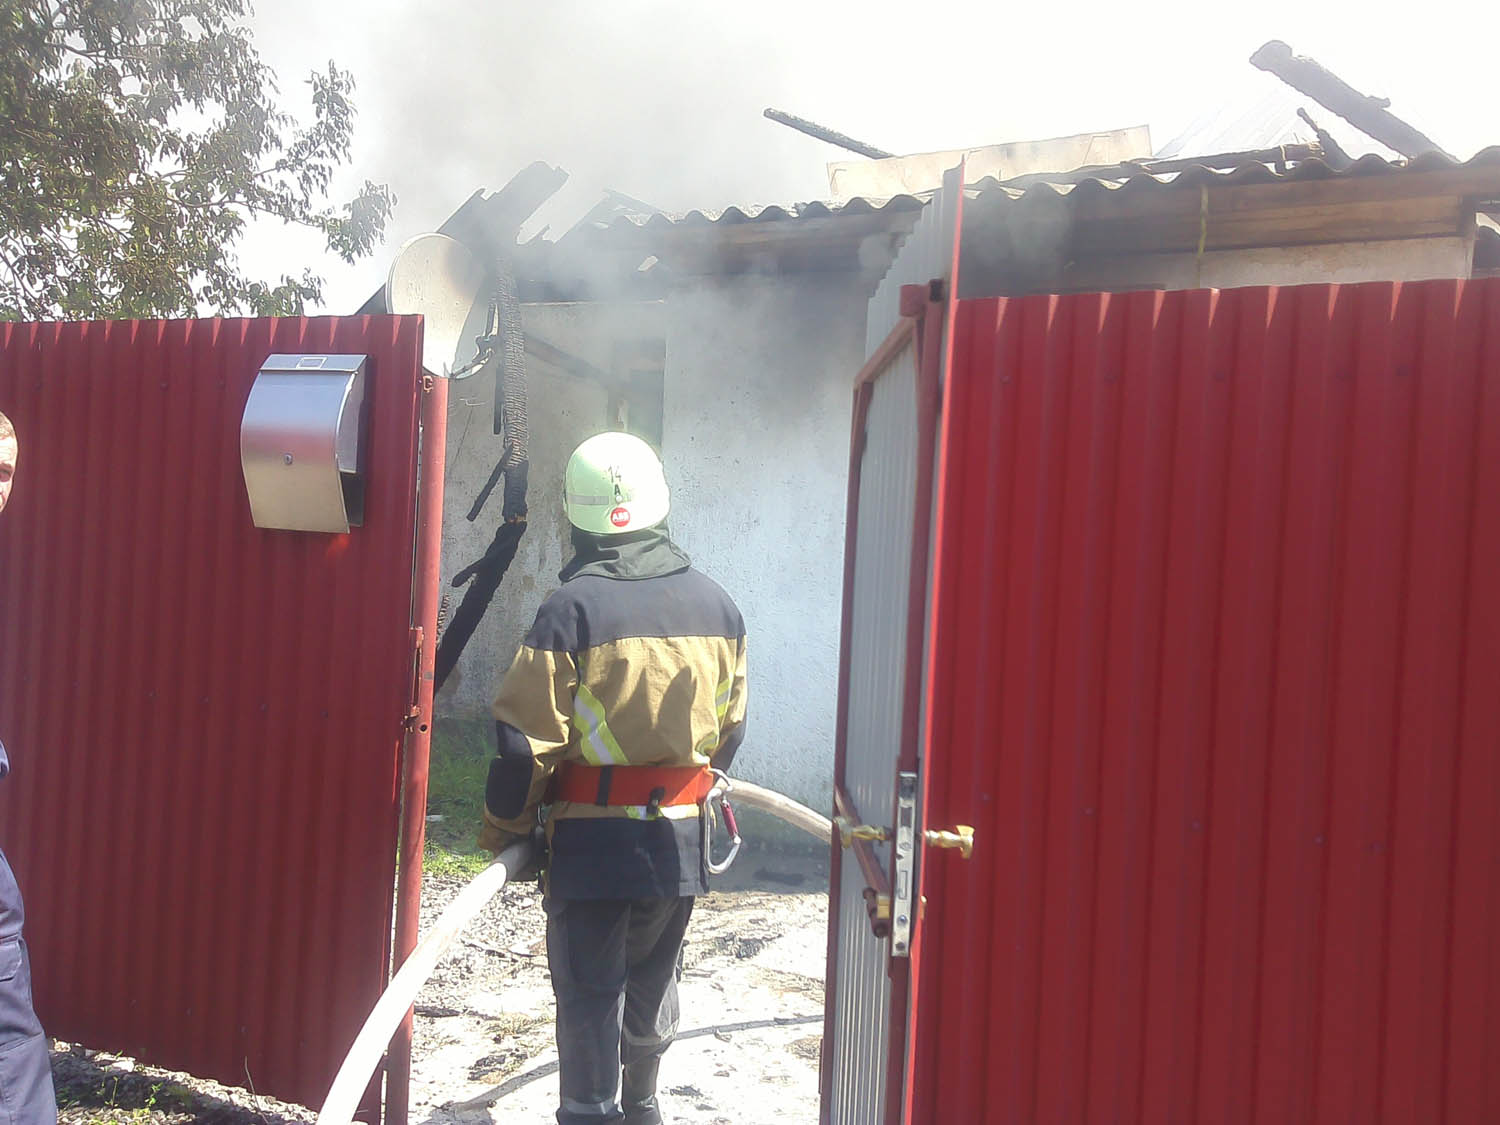 19 травня о 12:40 до оперативно-рятувальної служби надійшло повідомлення про пожежу, що виникла у приватному житловому будинку на вул. Свободи у селі Рогівка Ужгородського району.